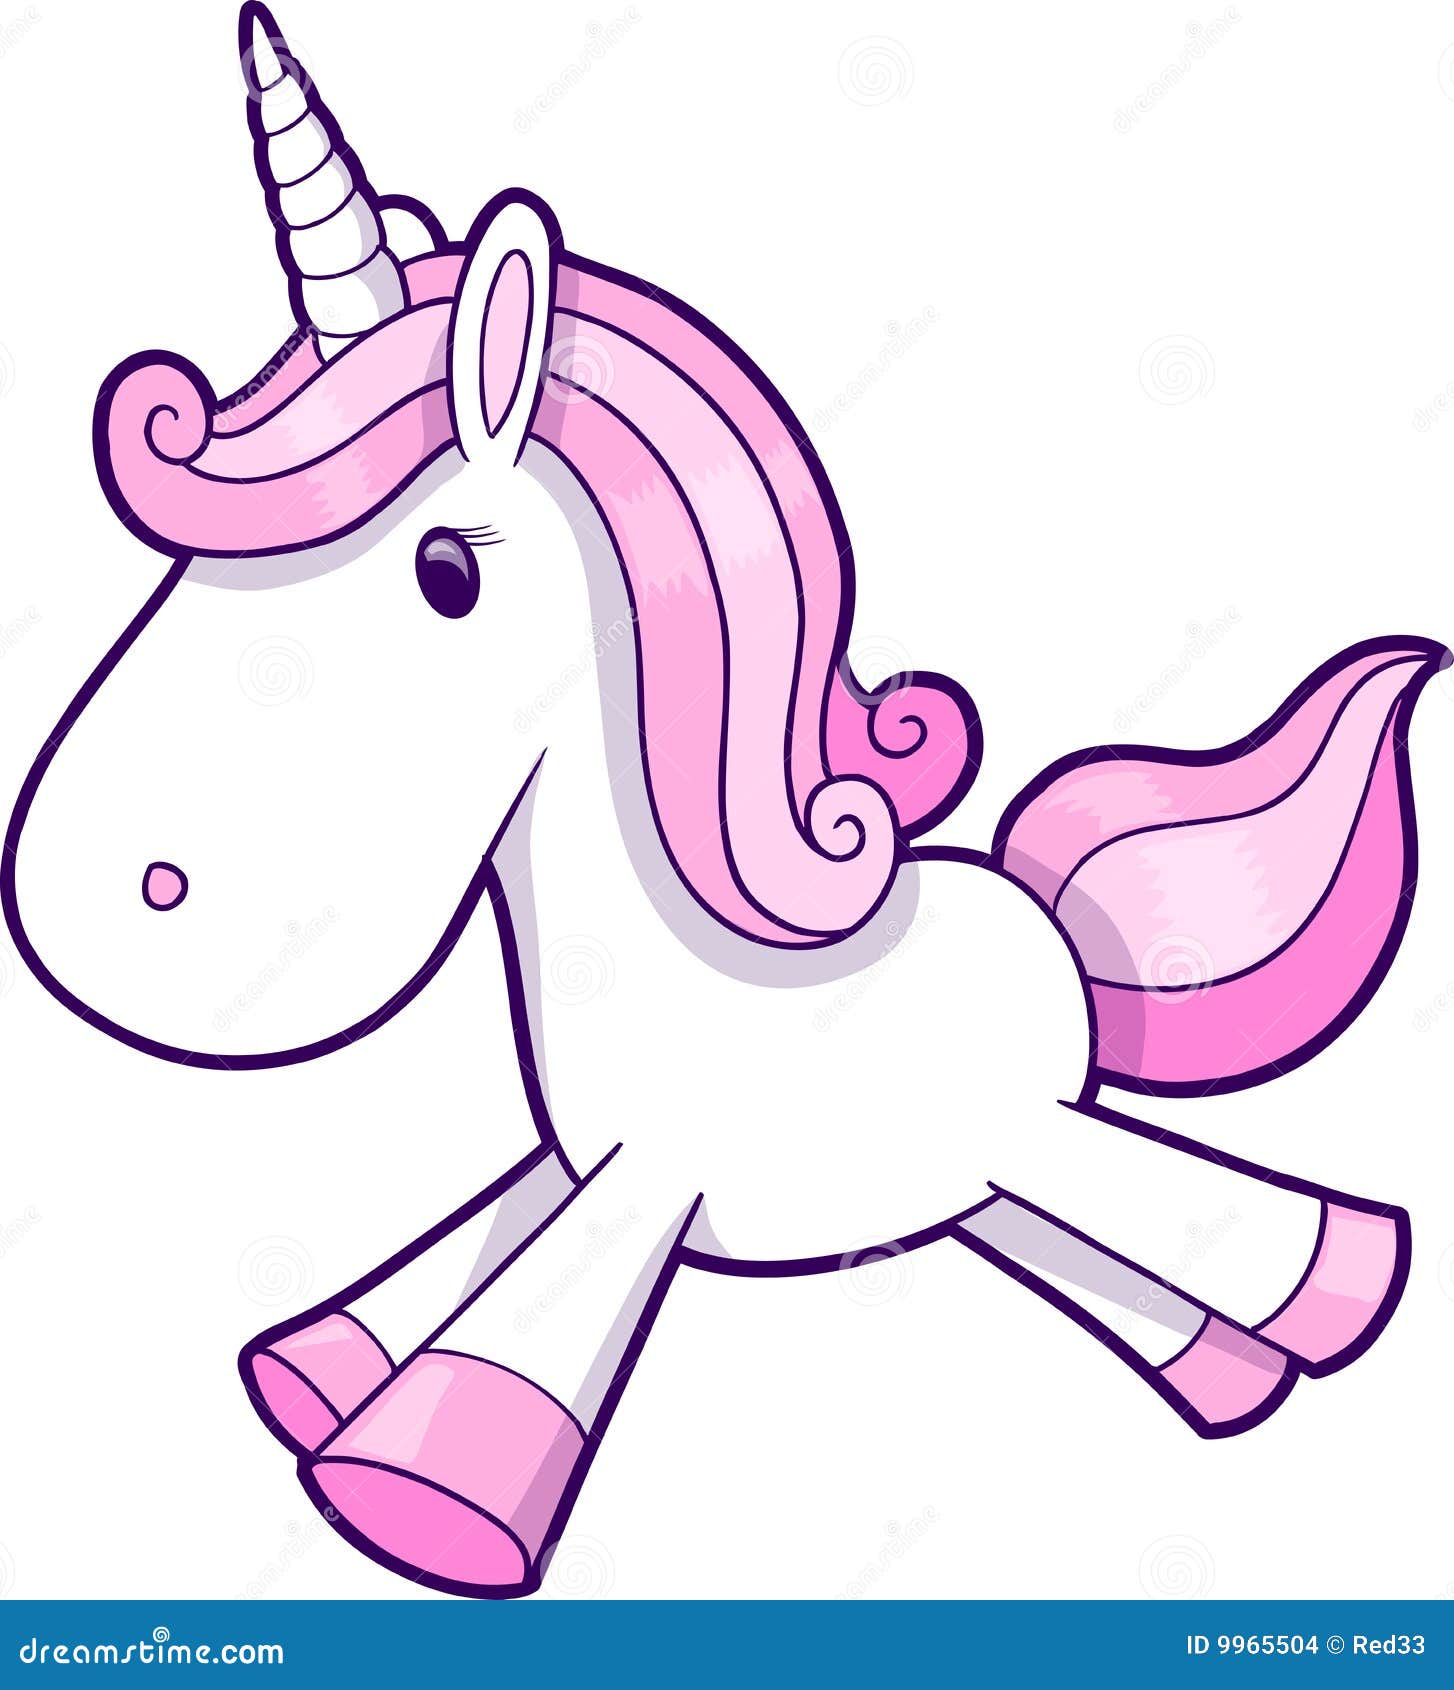 free animated unicorn clipart - photo #48